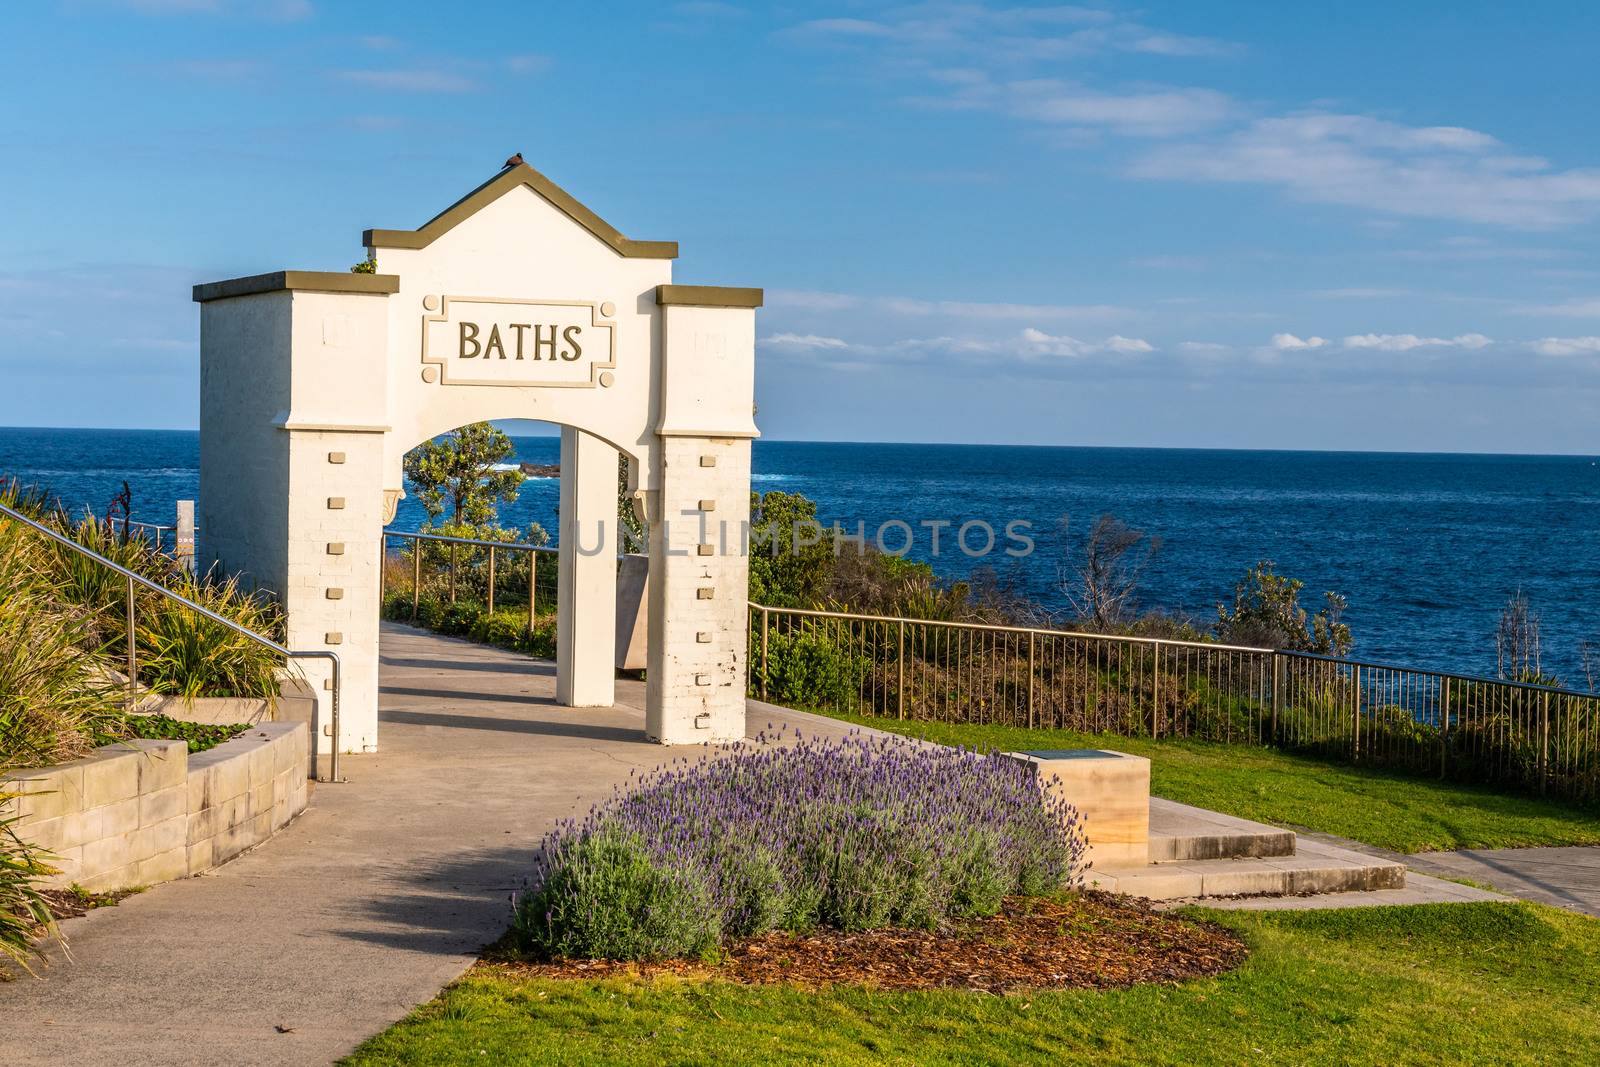 Entrance of Coogee baths, Sydney, NSW Australia by mauricallari